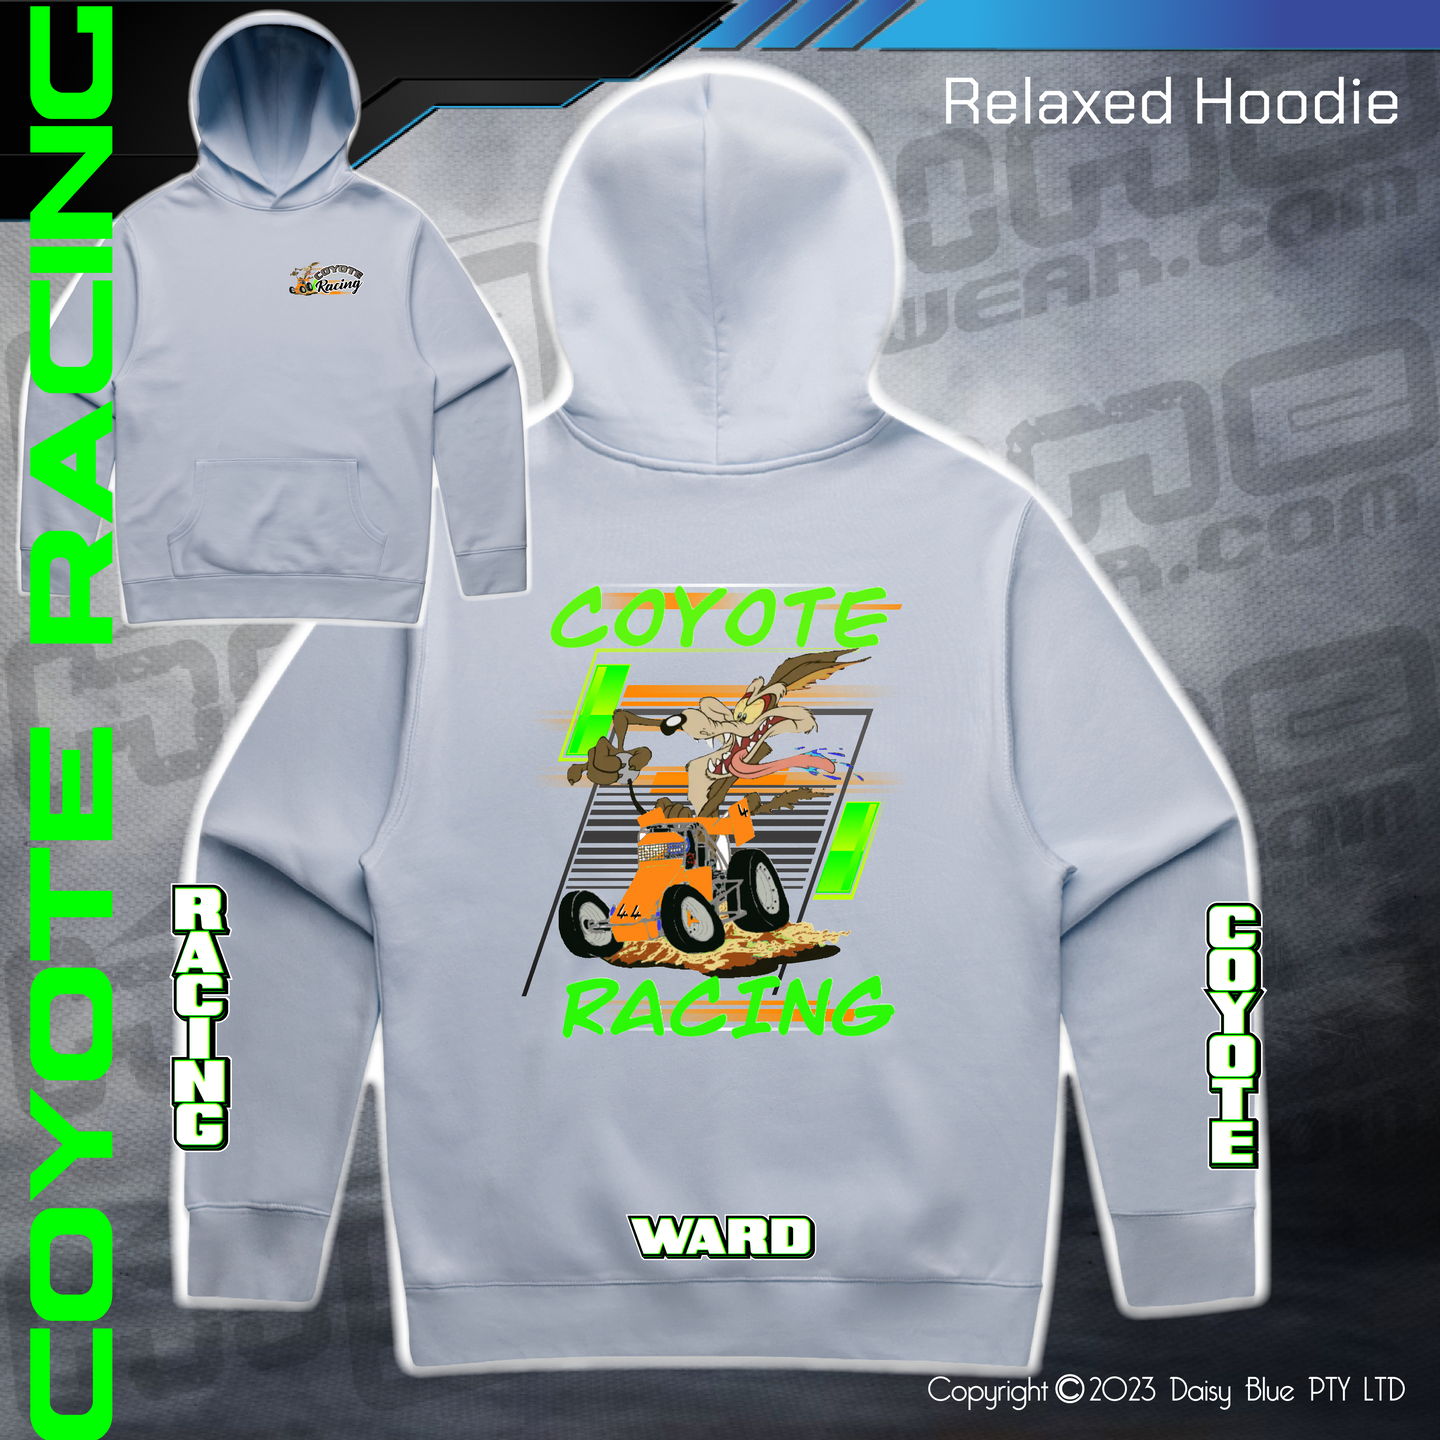 Relaxed Hoodie - Coyote Racing